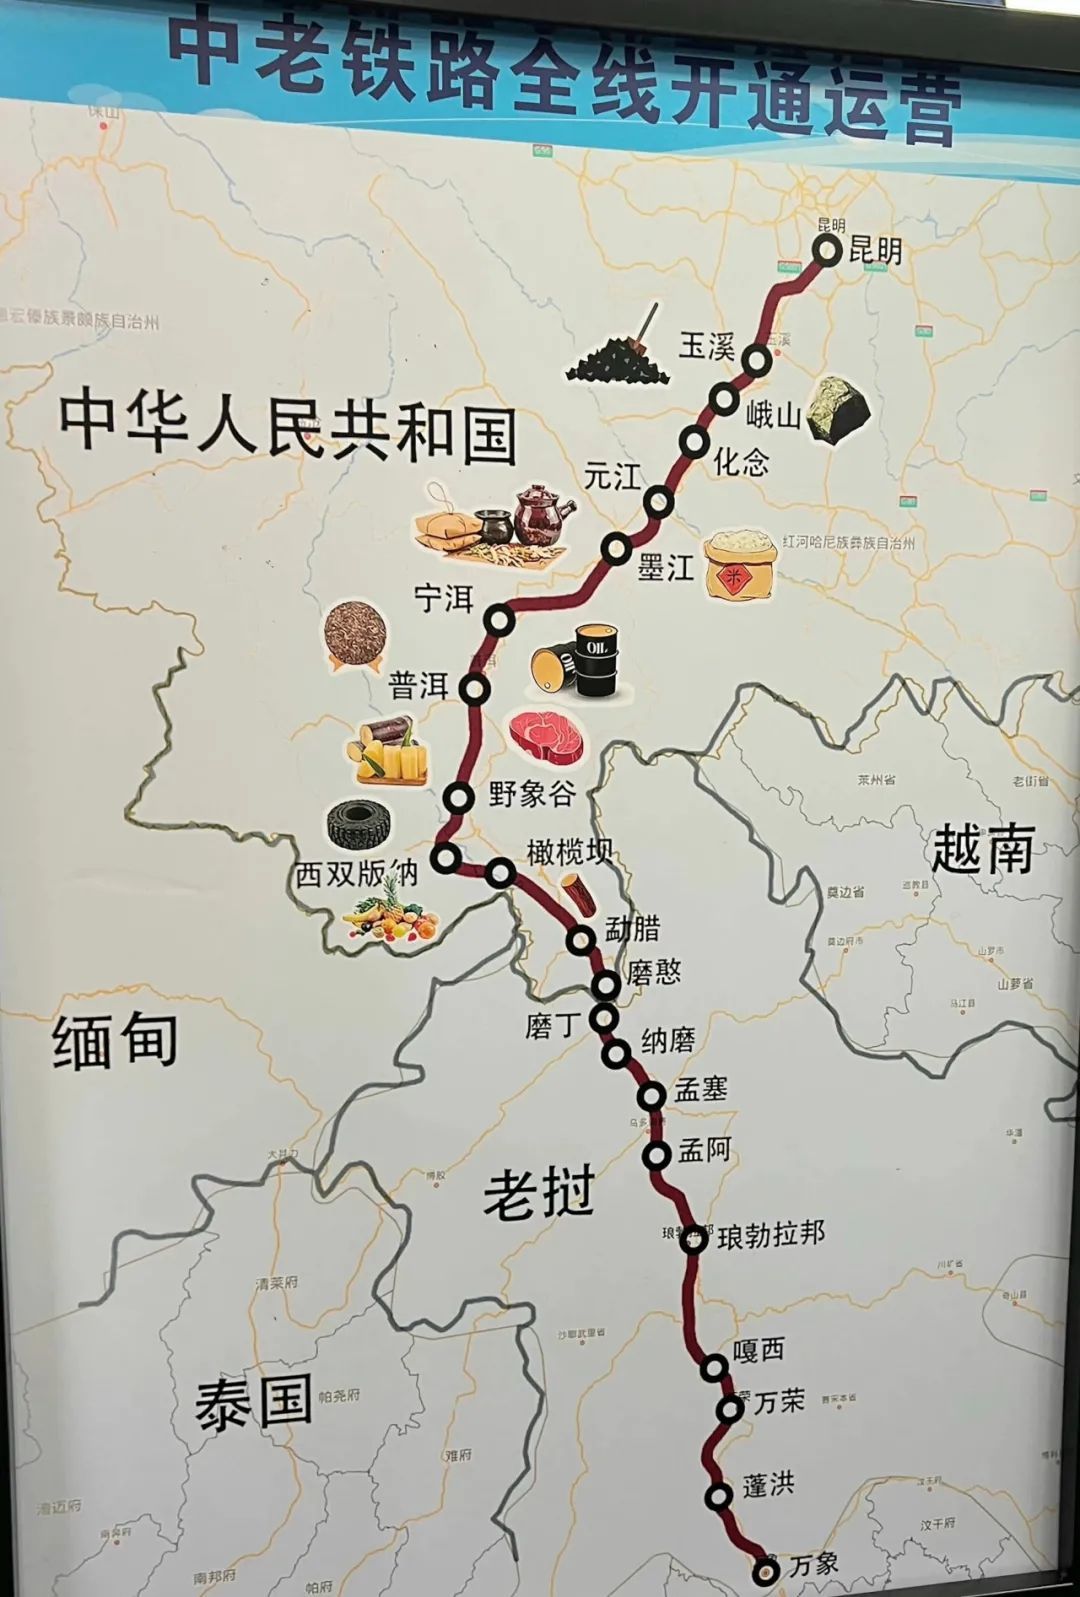 隆黄铁路叙永至毕节段开通运营--四川经济日报